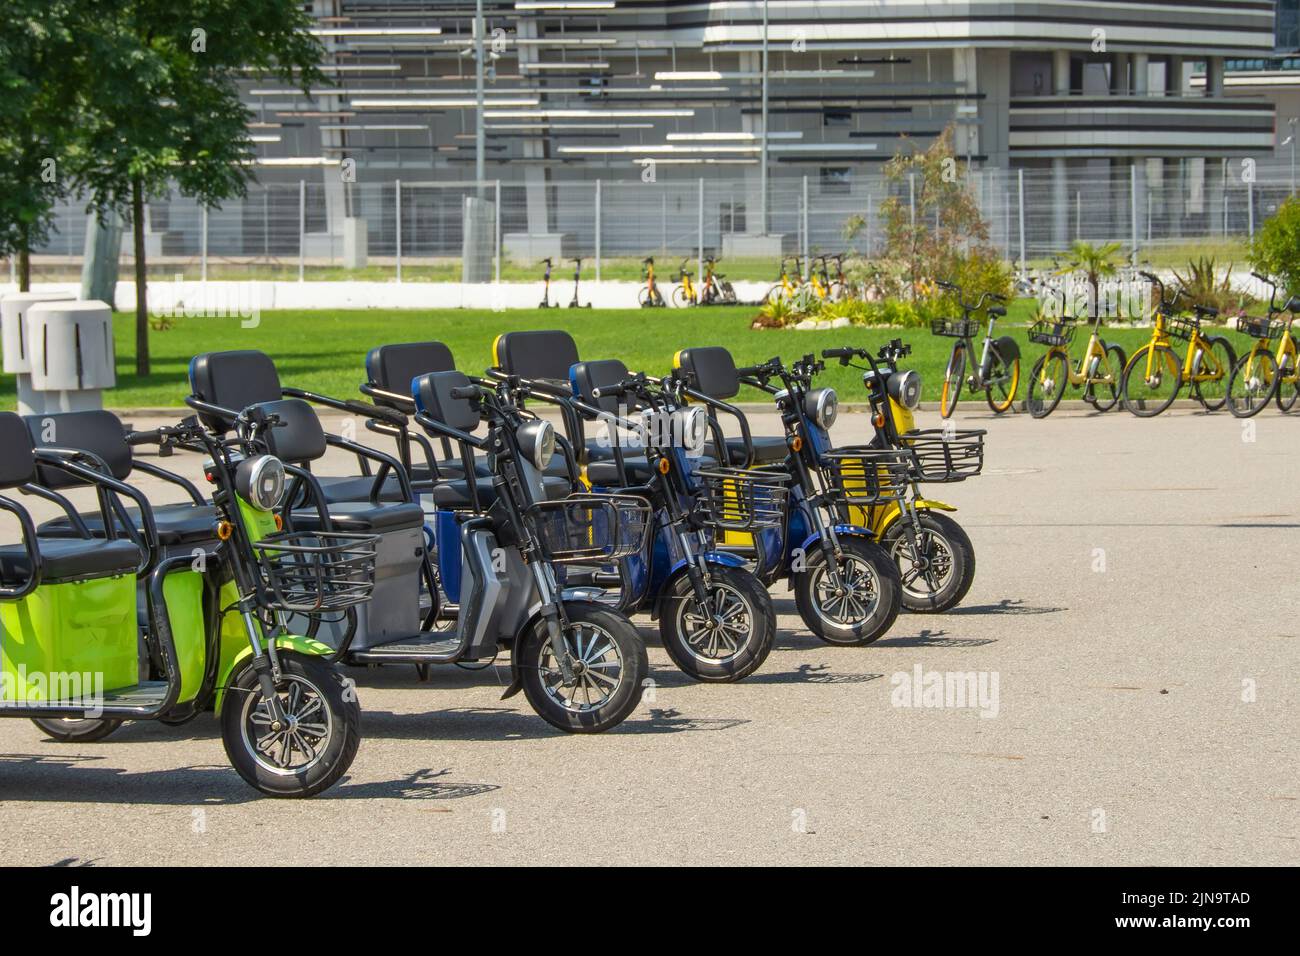 Scooters eléctricos, ciclomotores de tres plazas en el aparcamiento para alquilar y desplazarse por la ciudad Foto de stock